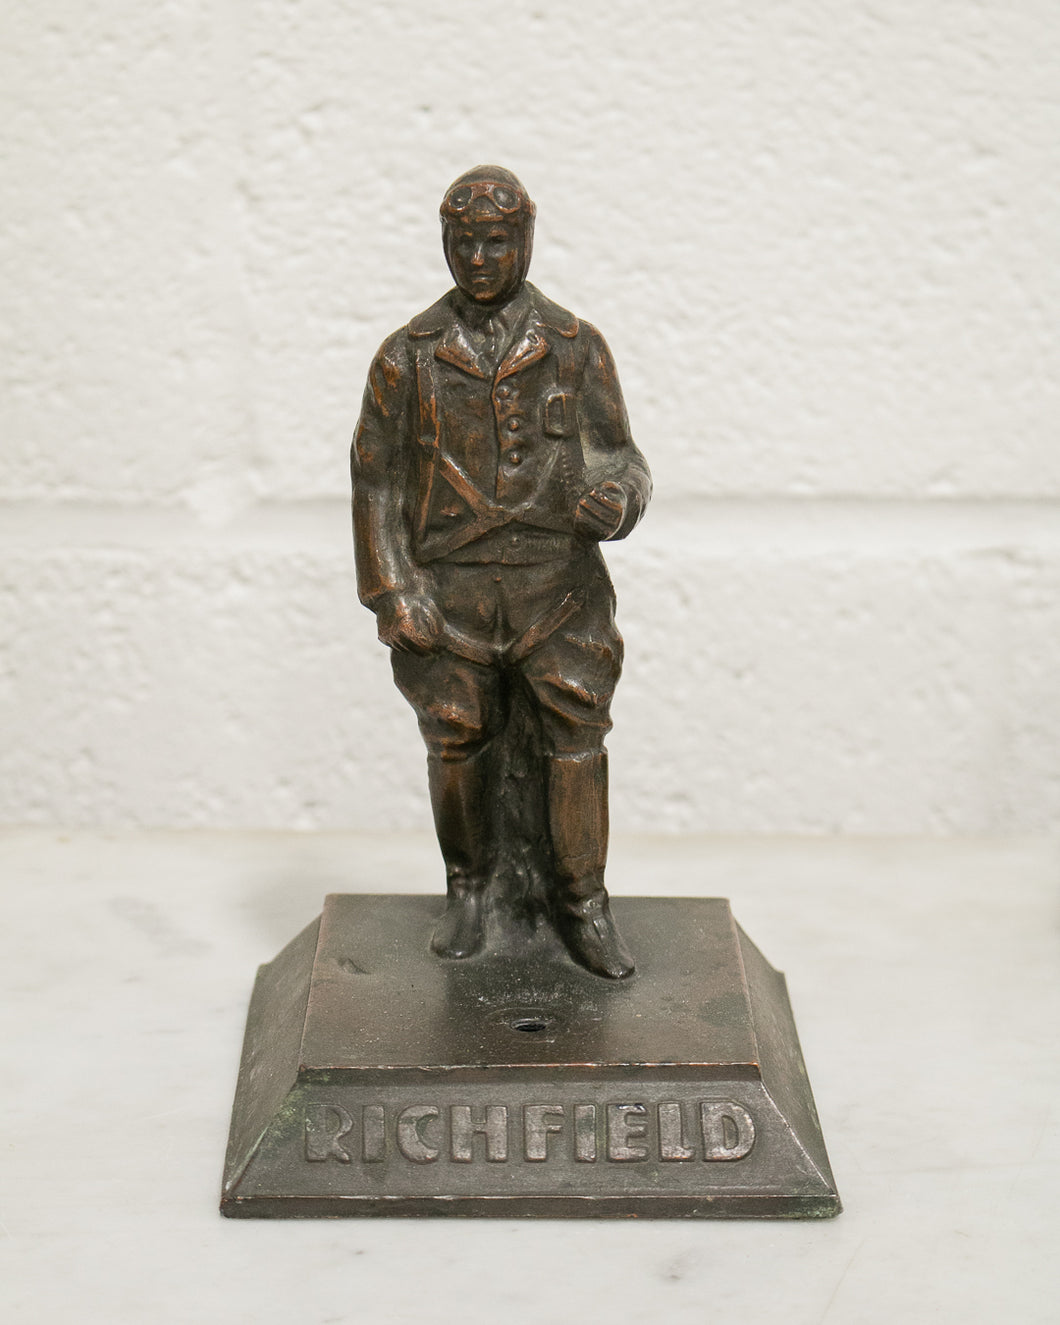 Richfield Statue